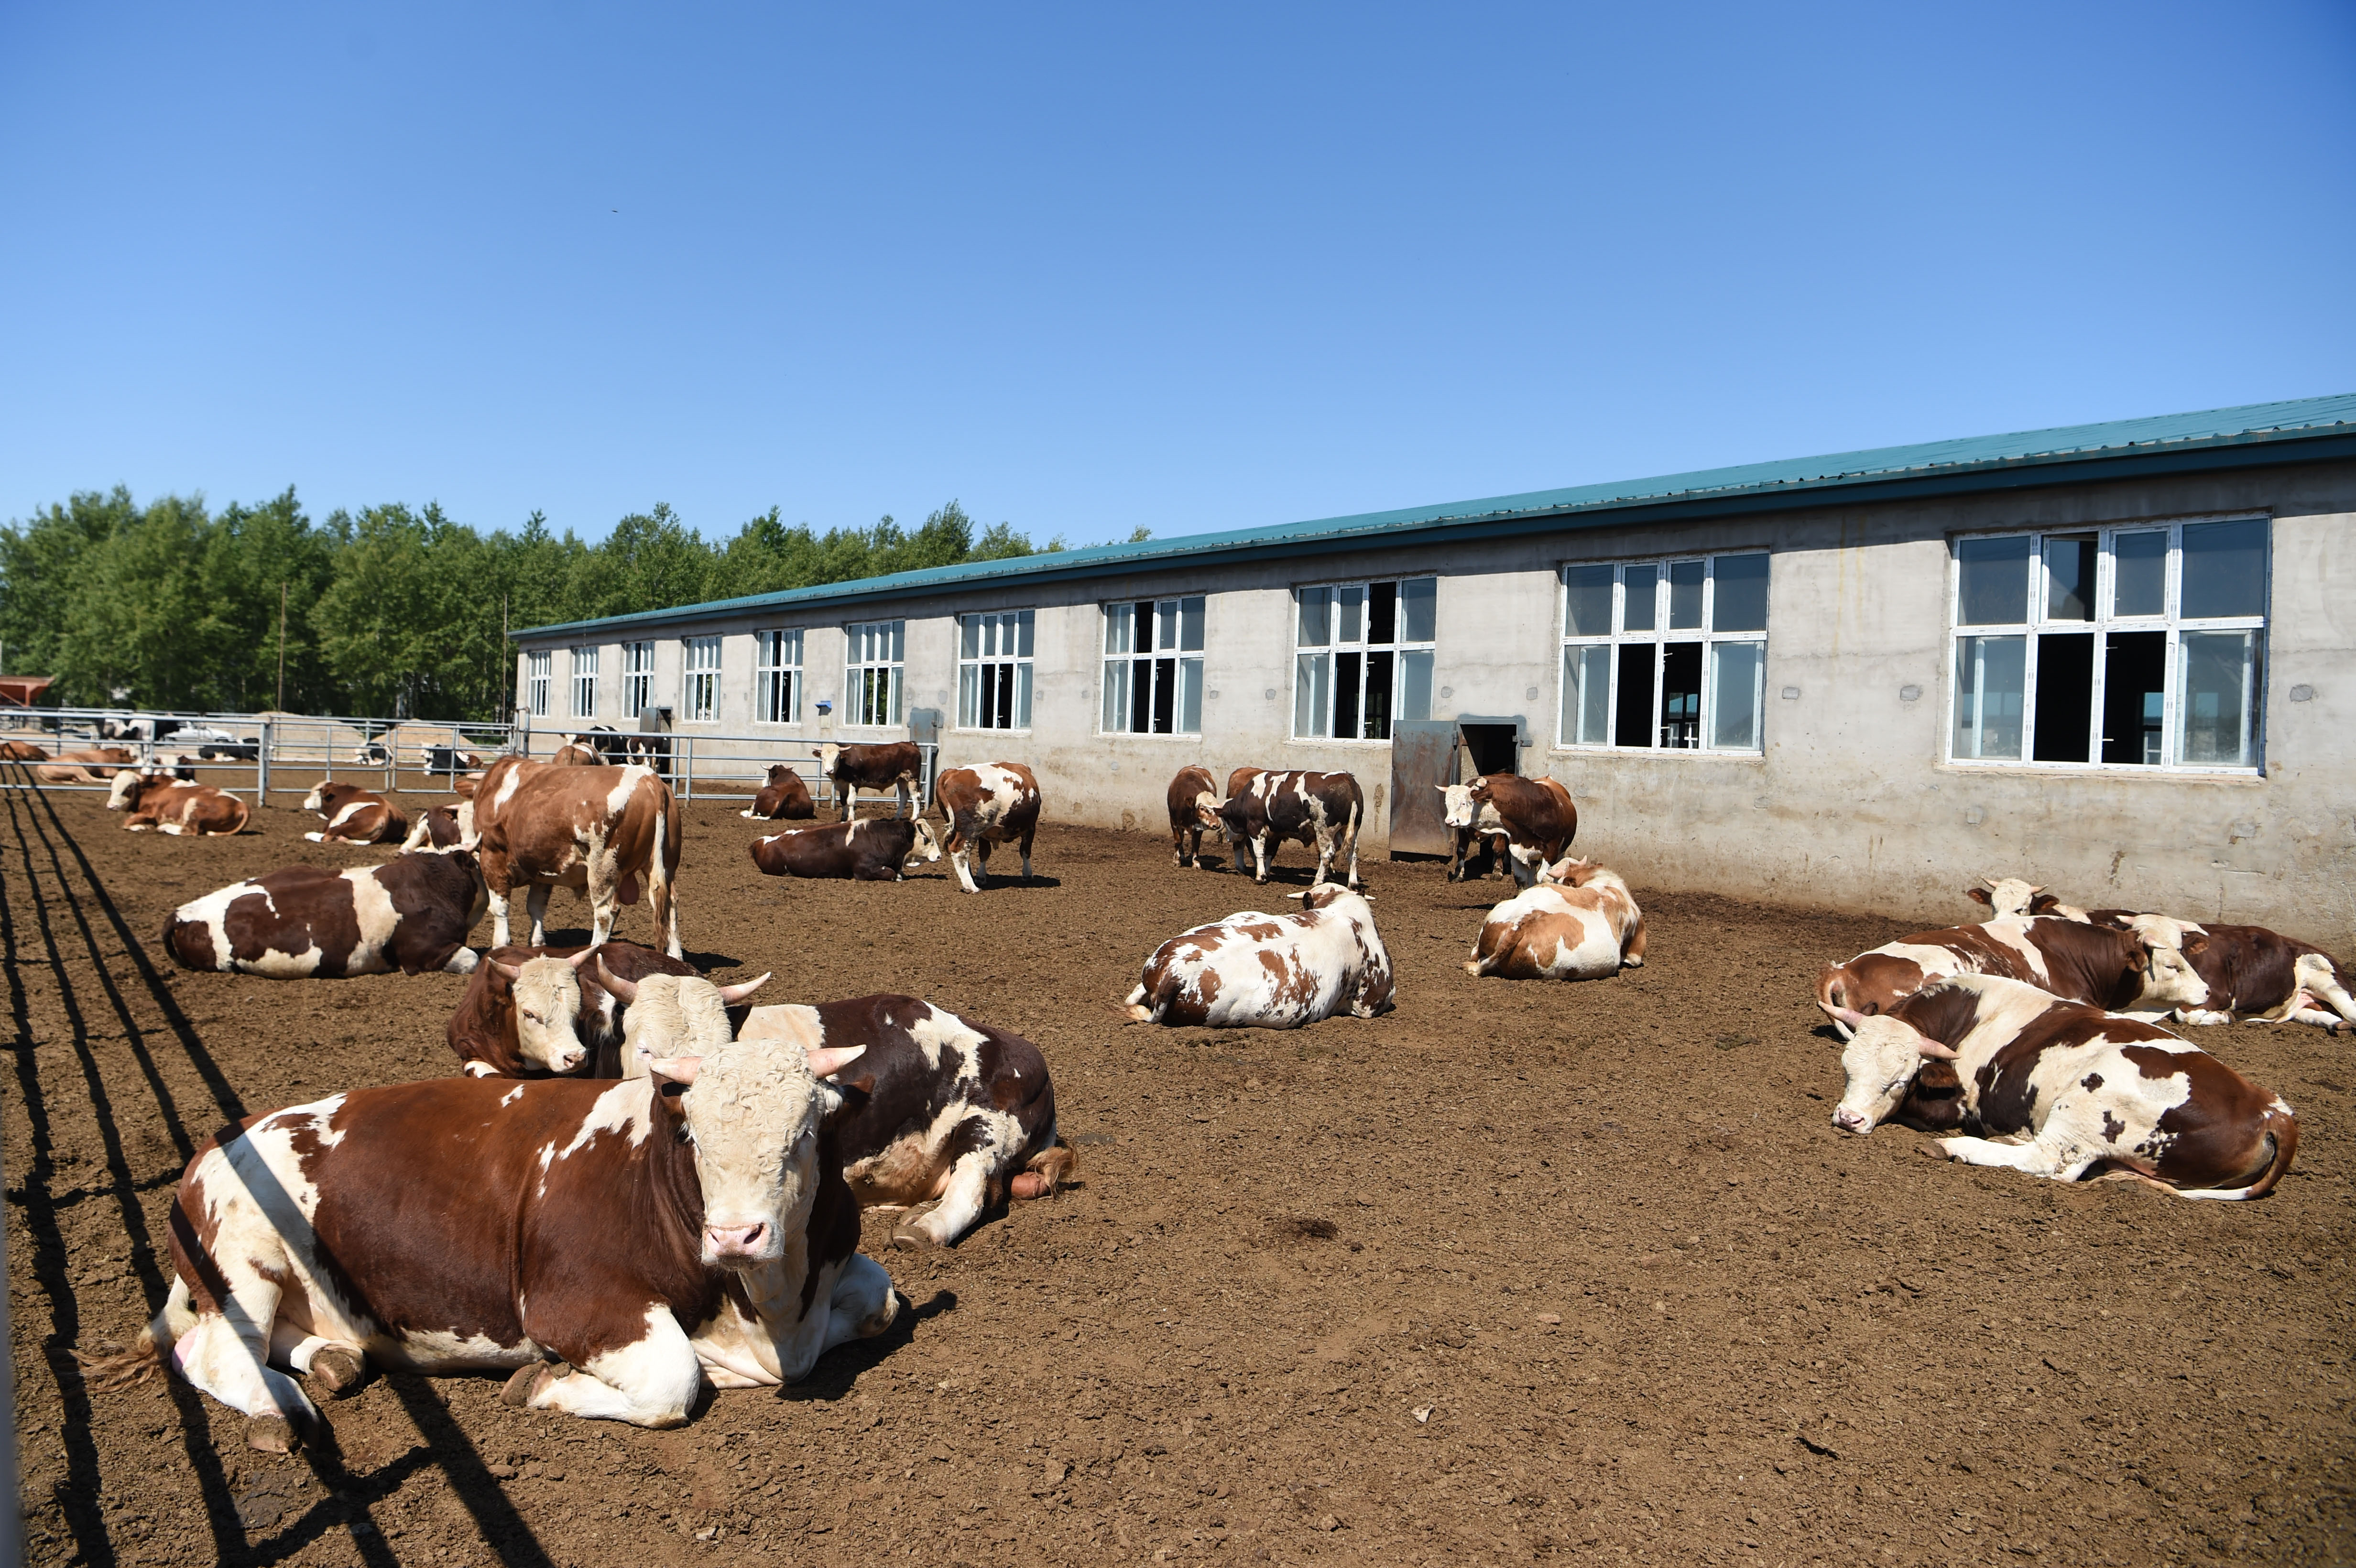 内蒙古 肉牛 2020年最新商品信息聚合专区 百度爱采购